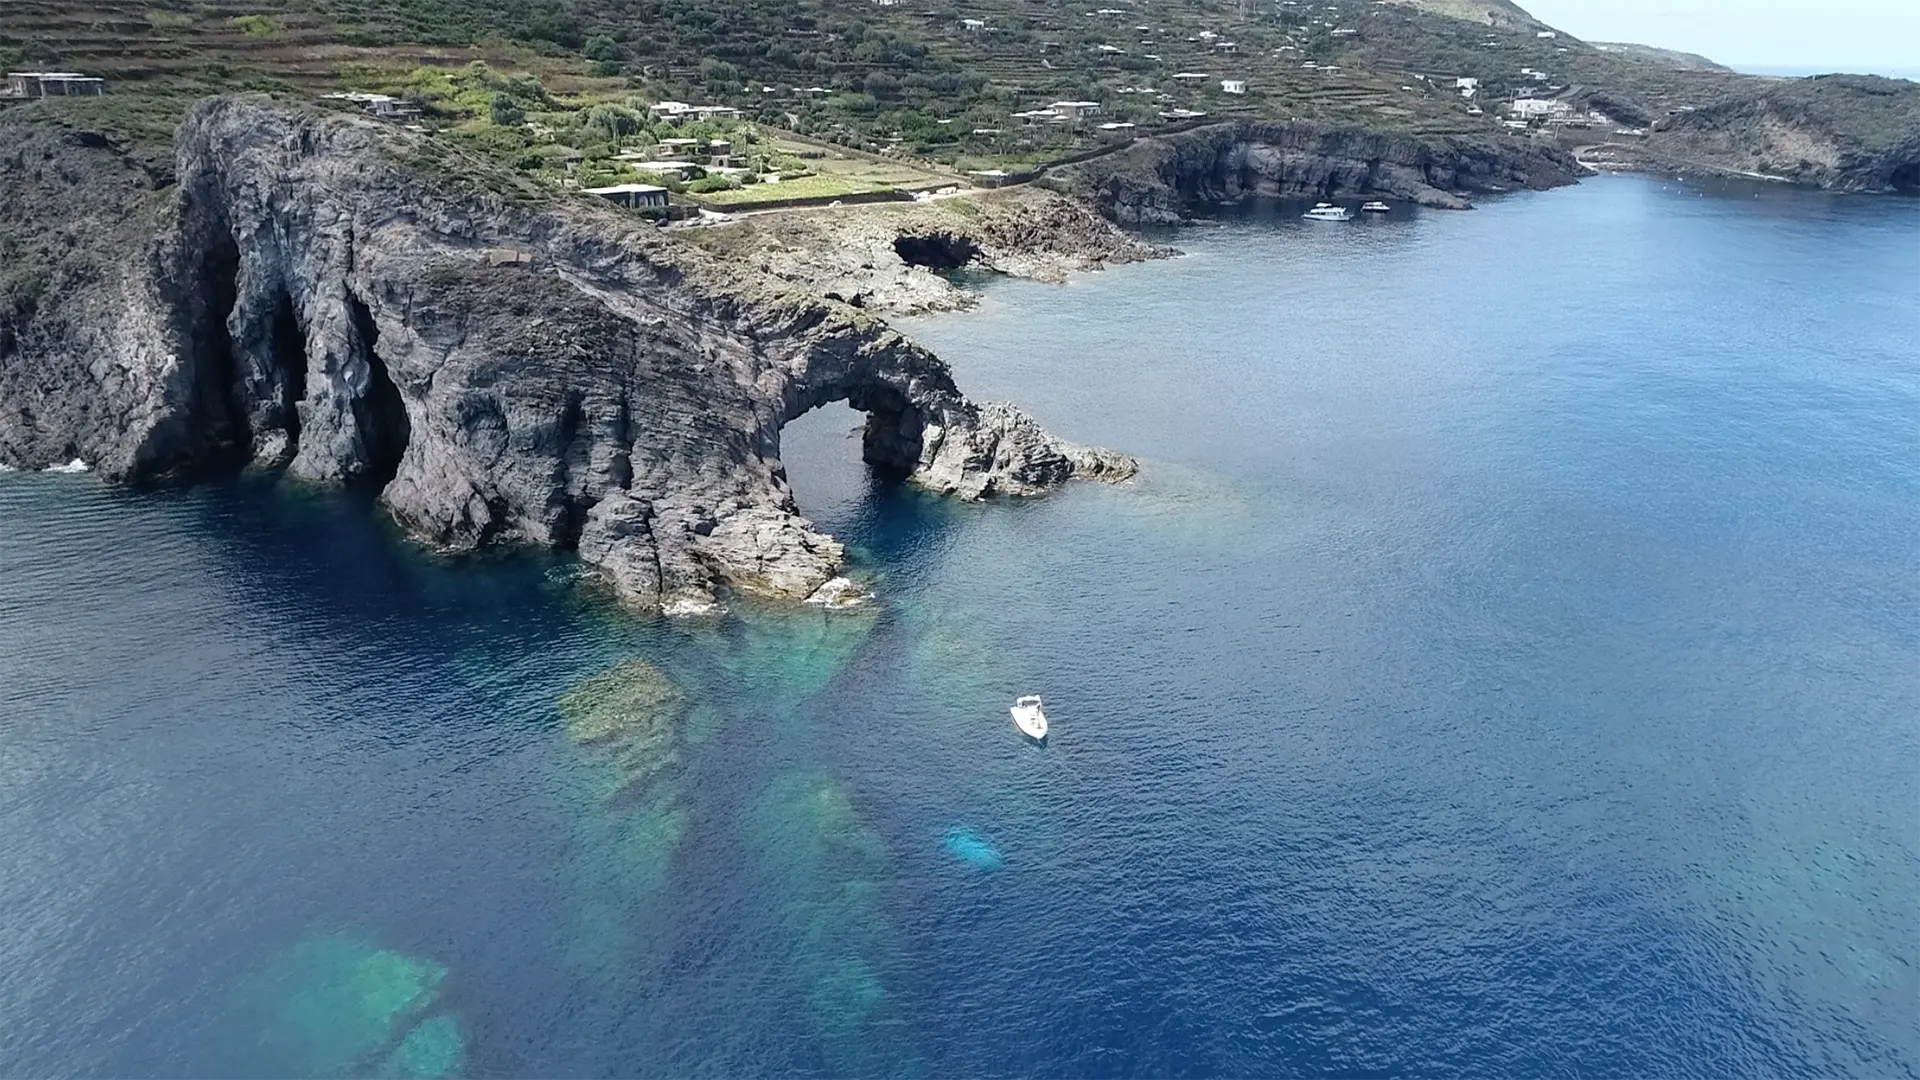 Come noleggiare una barca o un gommone a Pantelleria?